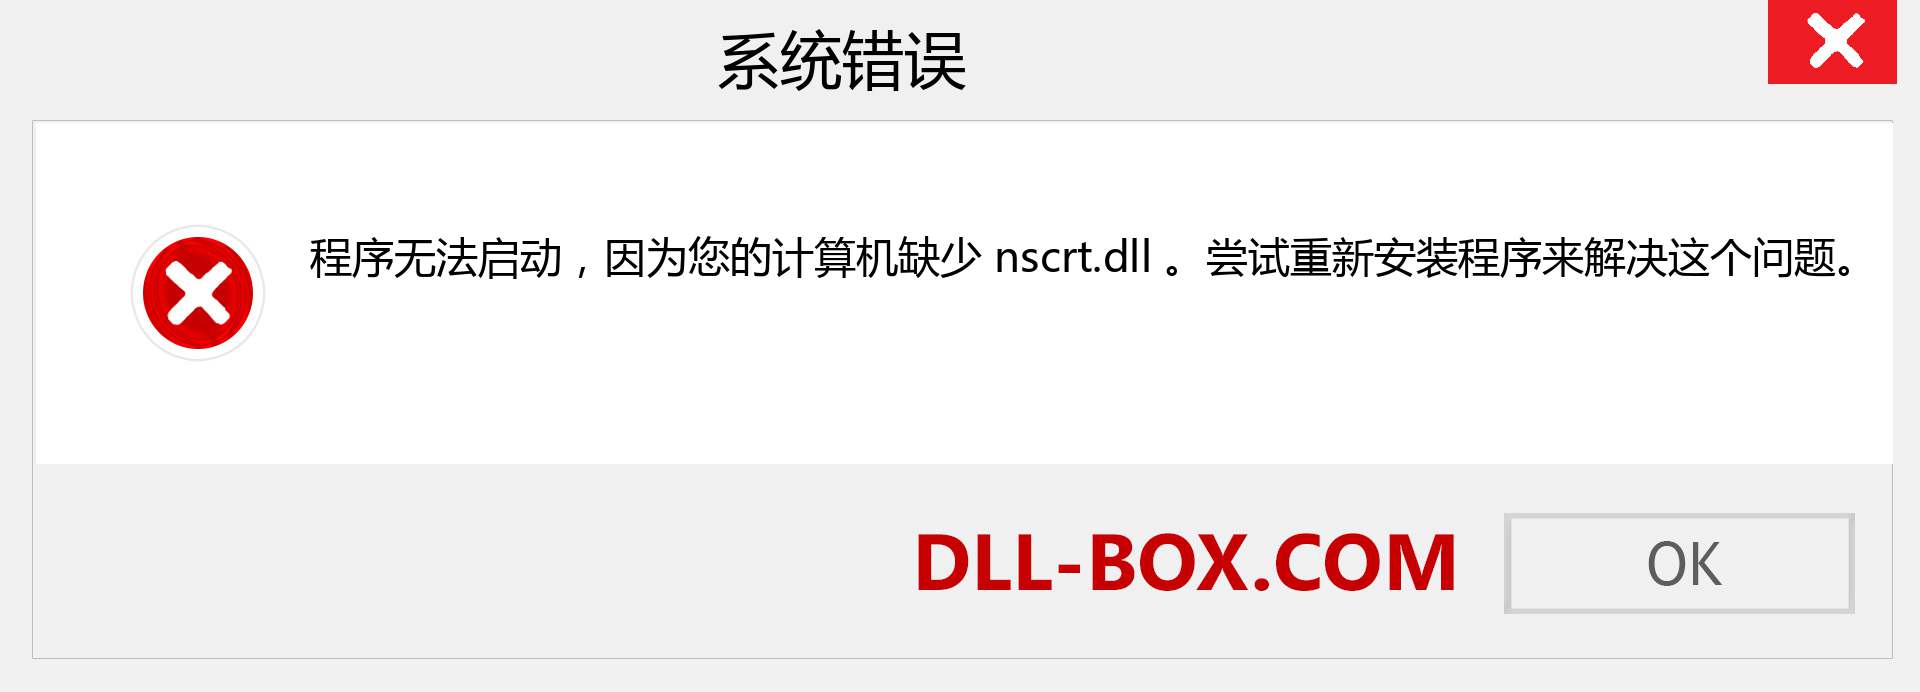 nscrt.dll 文件丢失？。 适用于 Windows 7、8、10 的下载 - 修复 Windows、照片、图像上的 nscrt dll 丢失错误